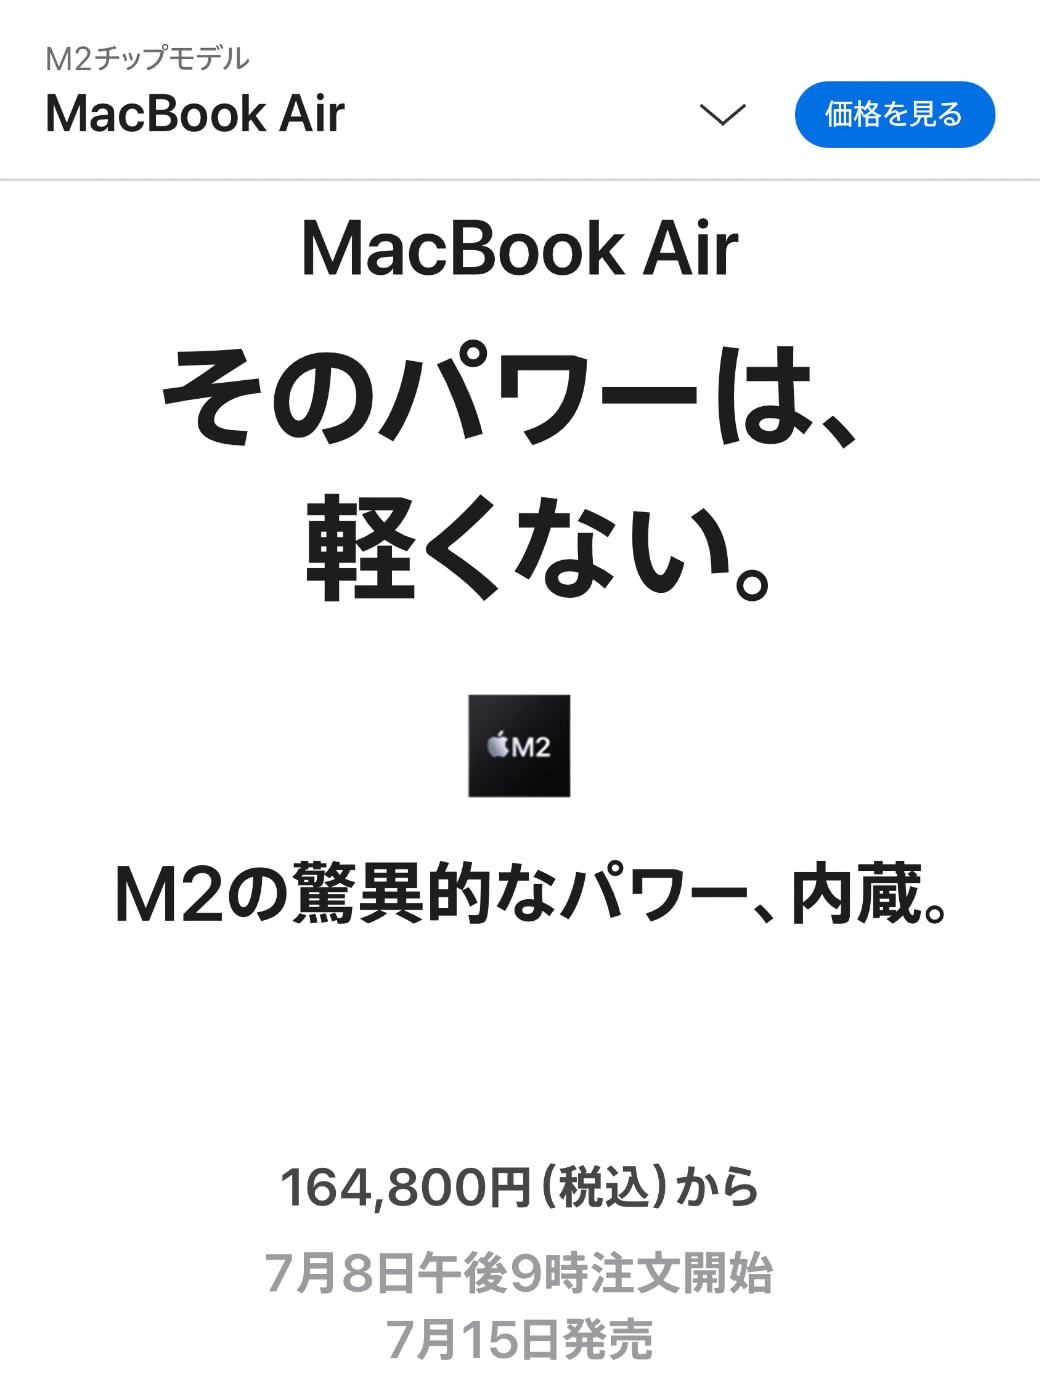 Apple、M2搭載のMacBook Airを7月15日に販売開始 ‒ 予約は7月8日より